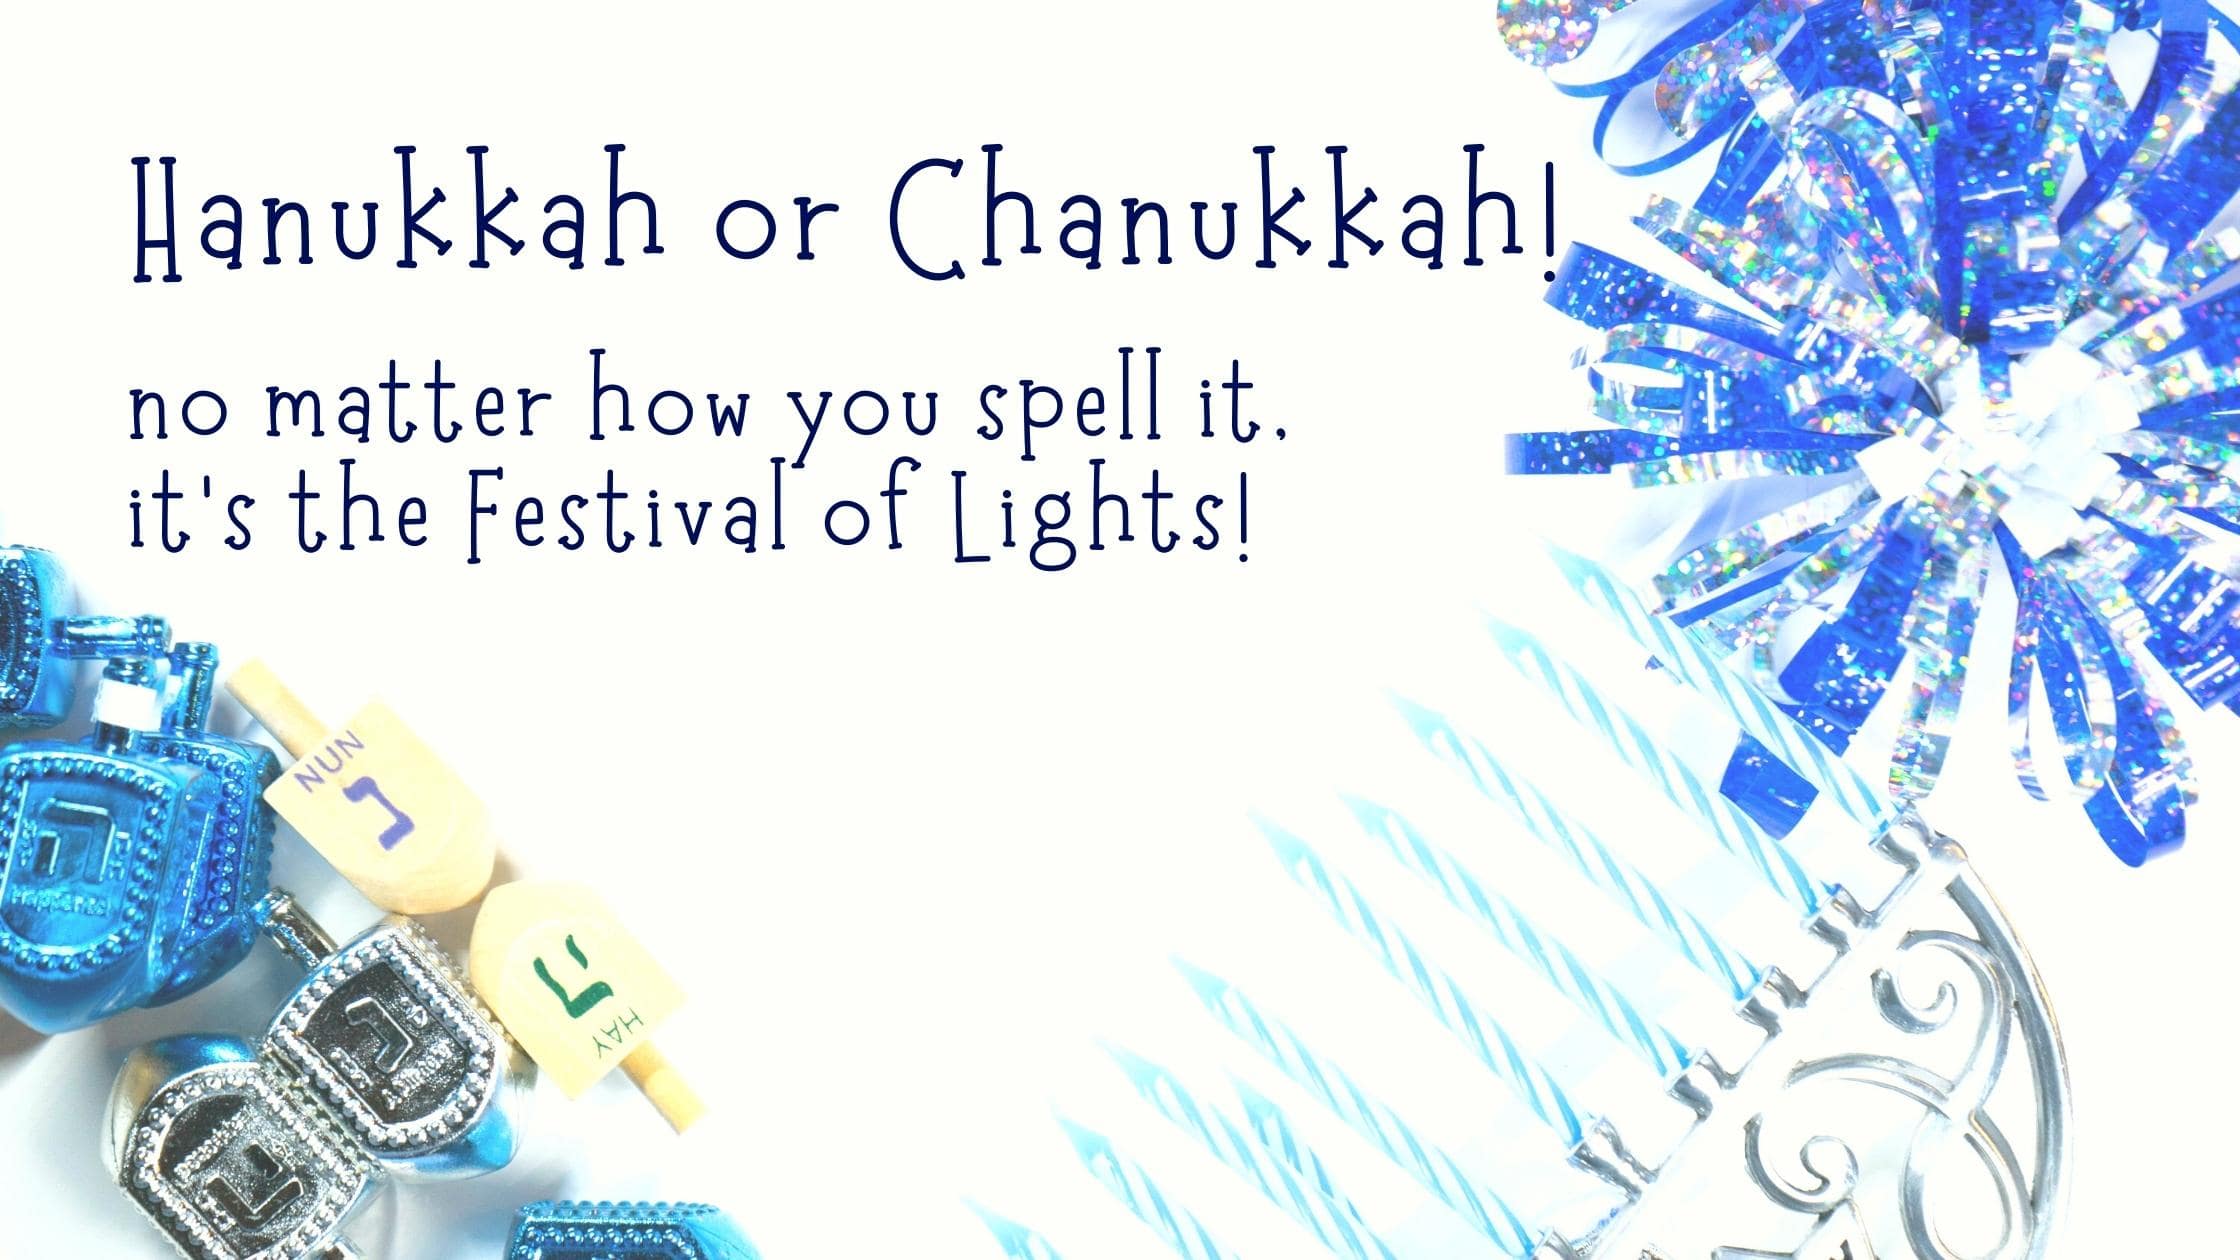 Chanukah 2022, Hanukkah 2022, Hanukkah or Chanukah, Hanukkah, Chanukah, the festival of lights,